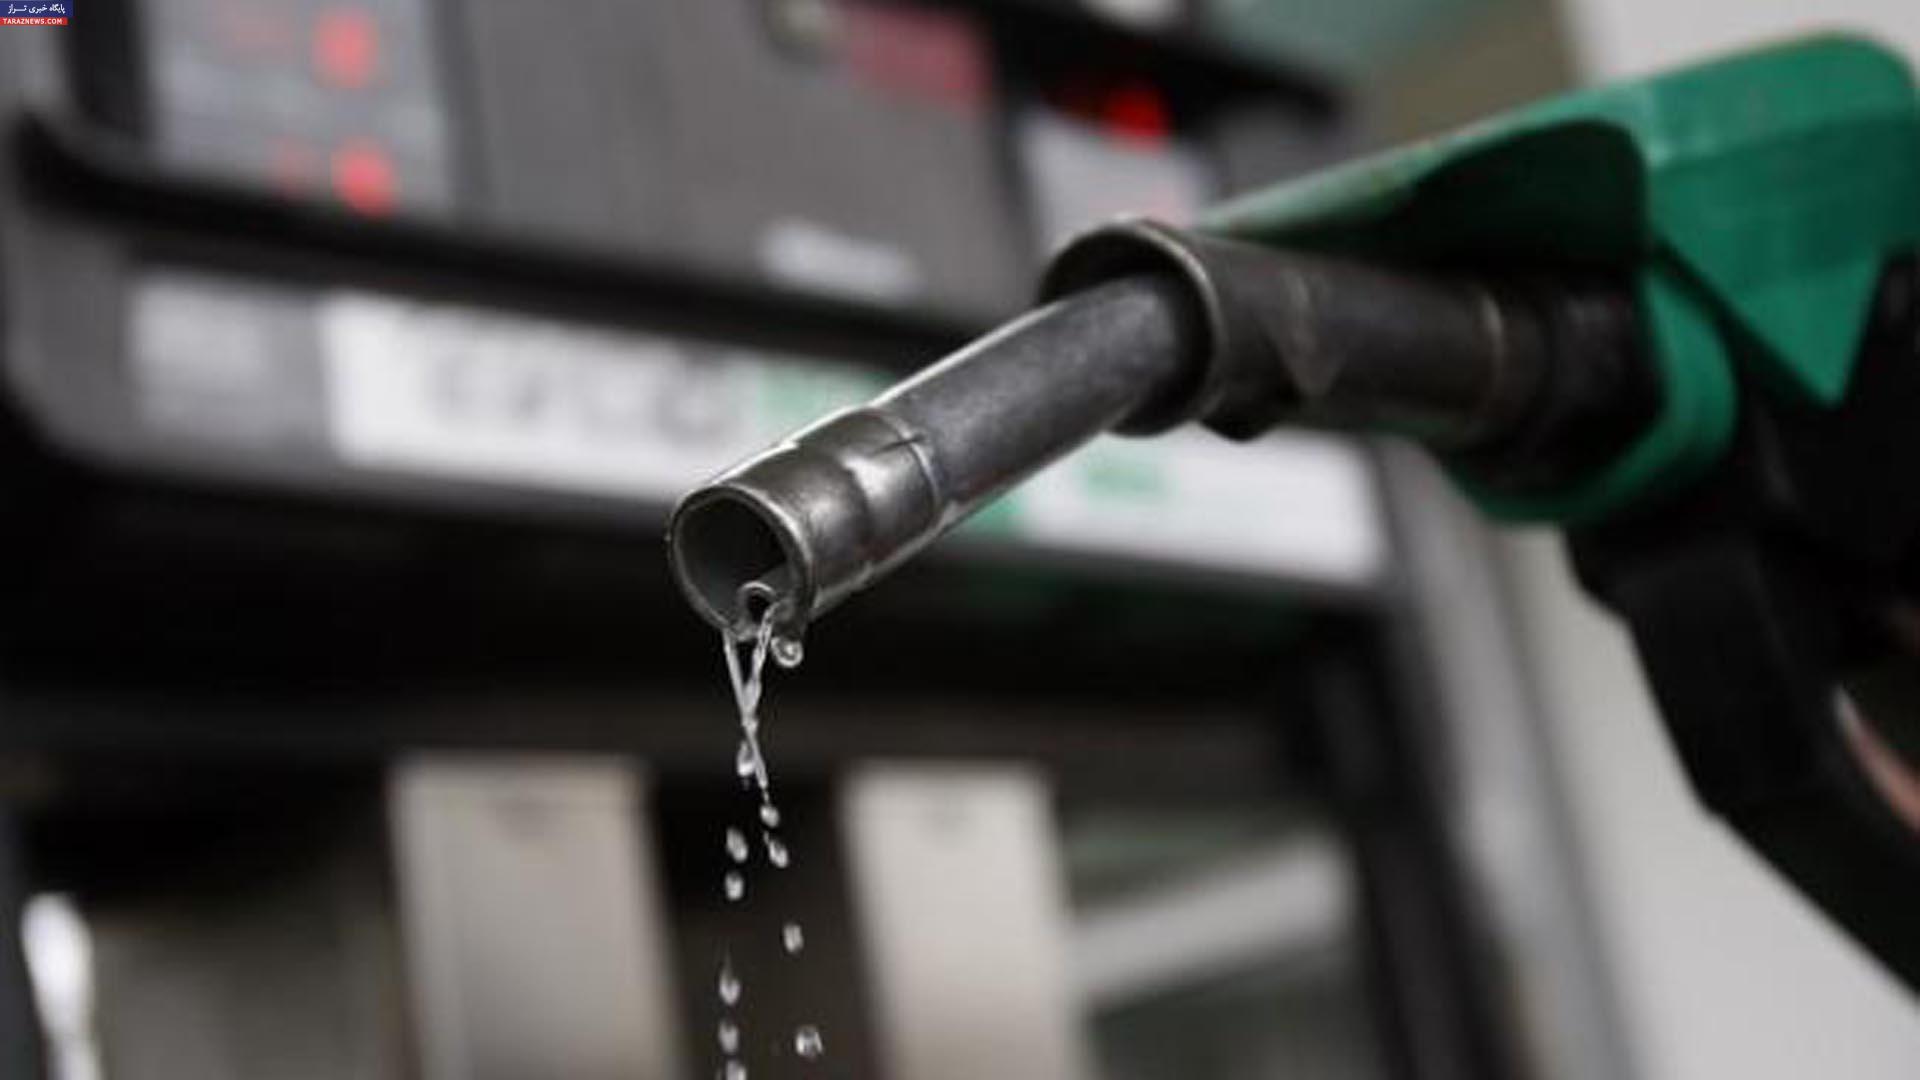 دو سناریو برای بنزین در سال 95/ آیا بنزین باز هم گران می شود؟